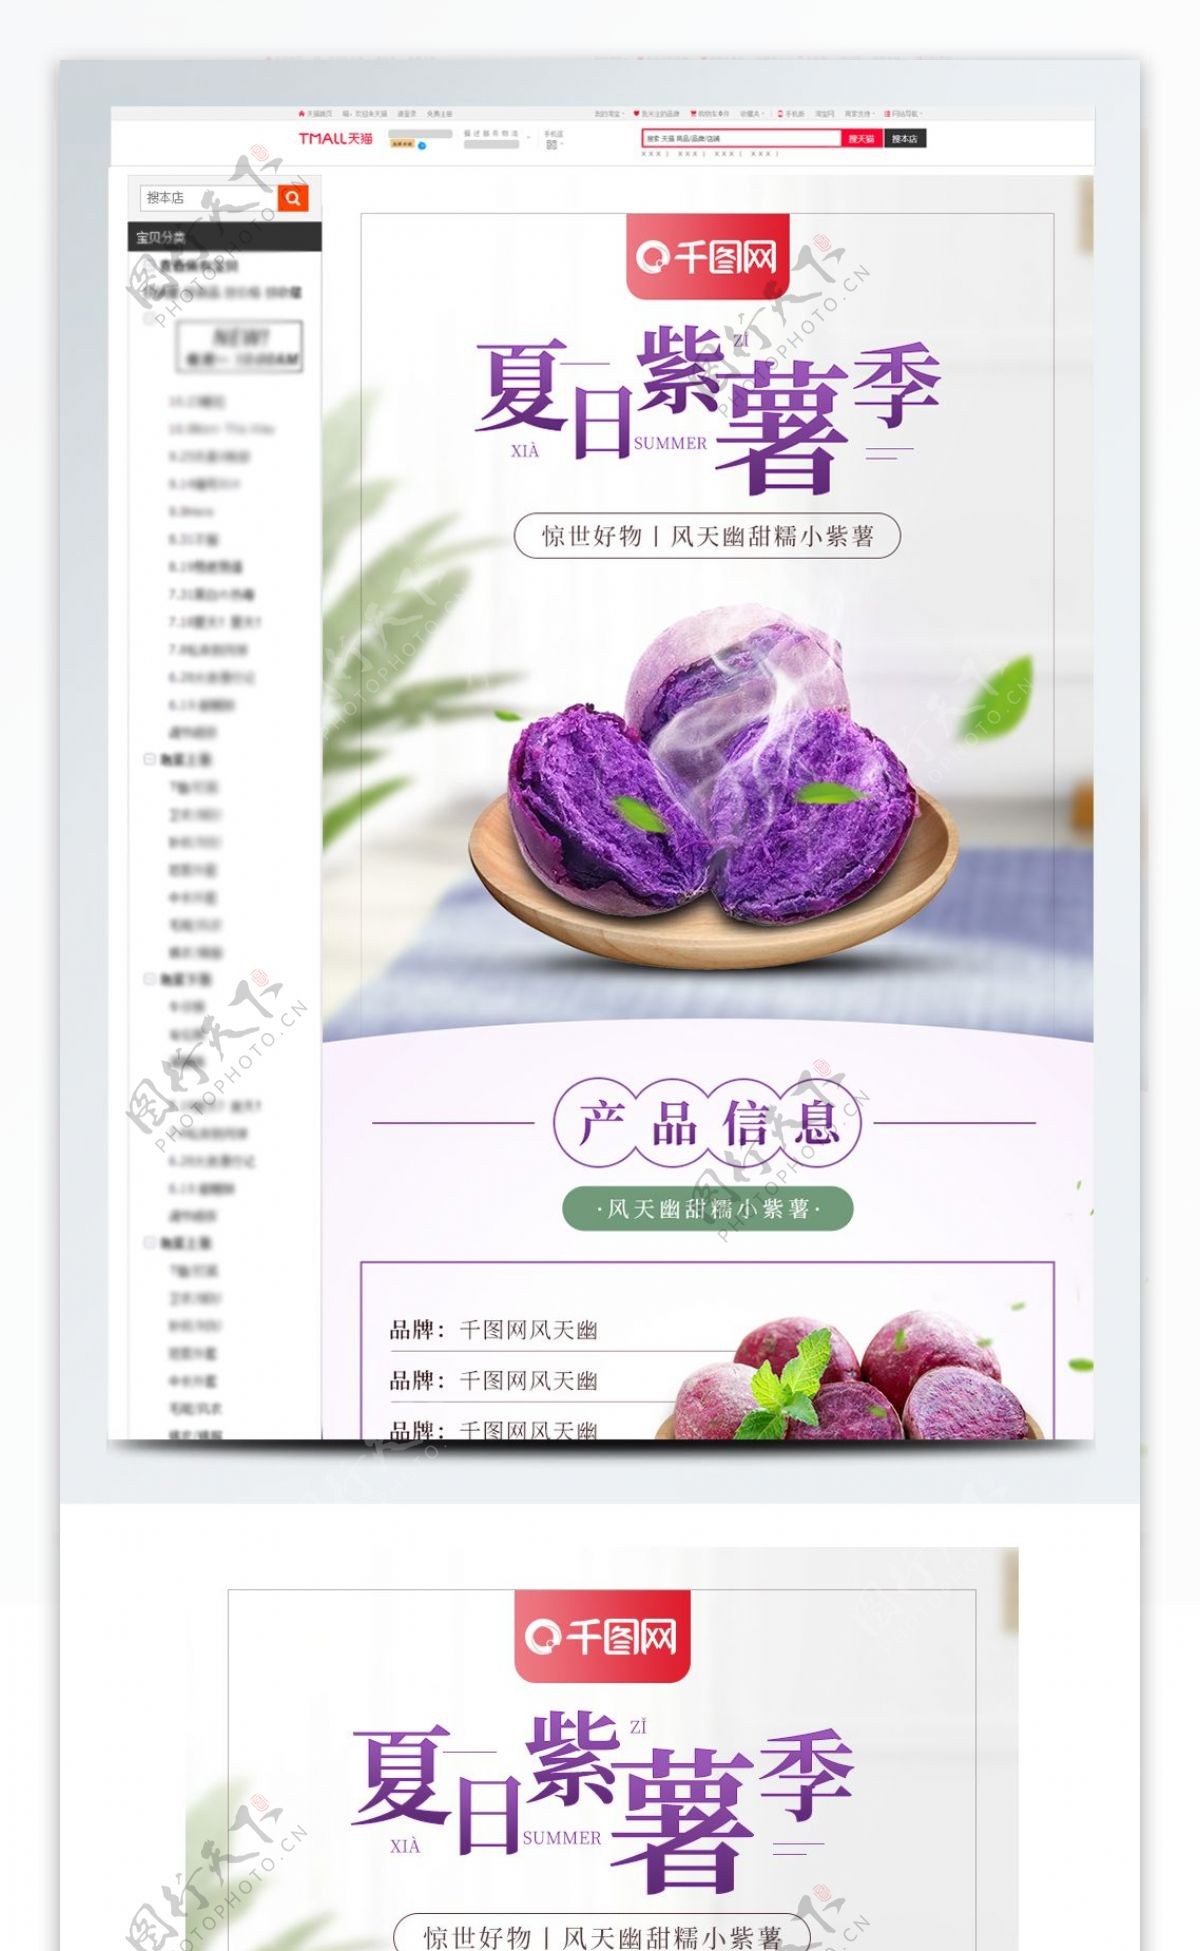 天猫淘宝紫薯红薯详情页模版食品详情页